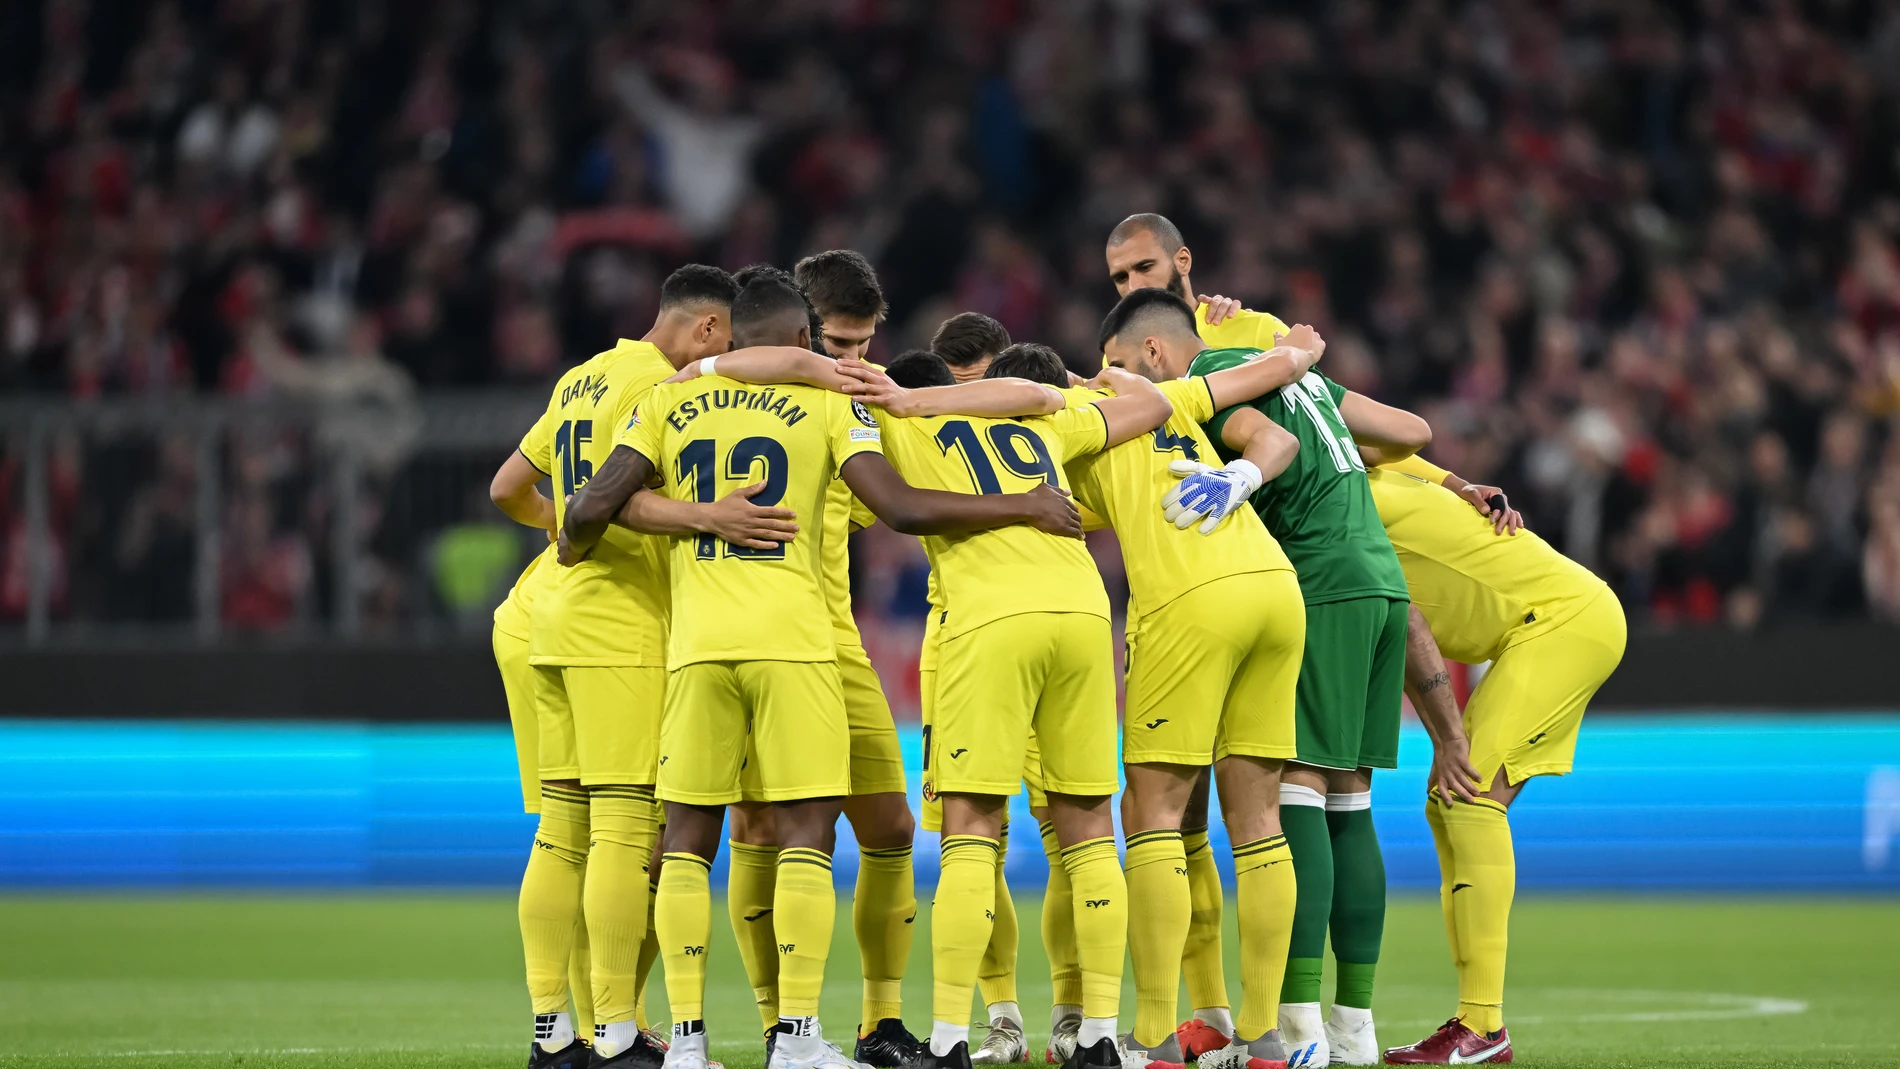 Liverpool Villarreal: alineaciones, resultado y goles del de fútbol de Champions, hoy en directo